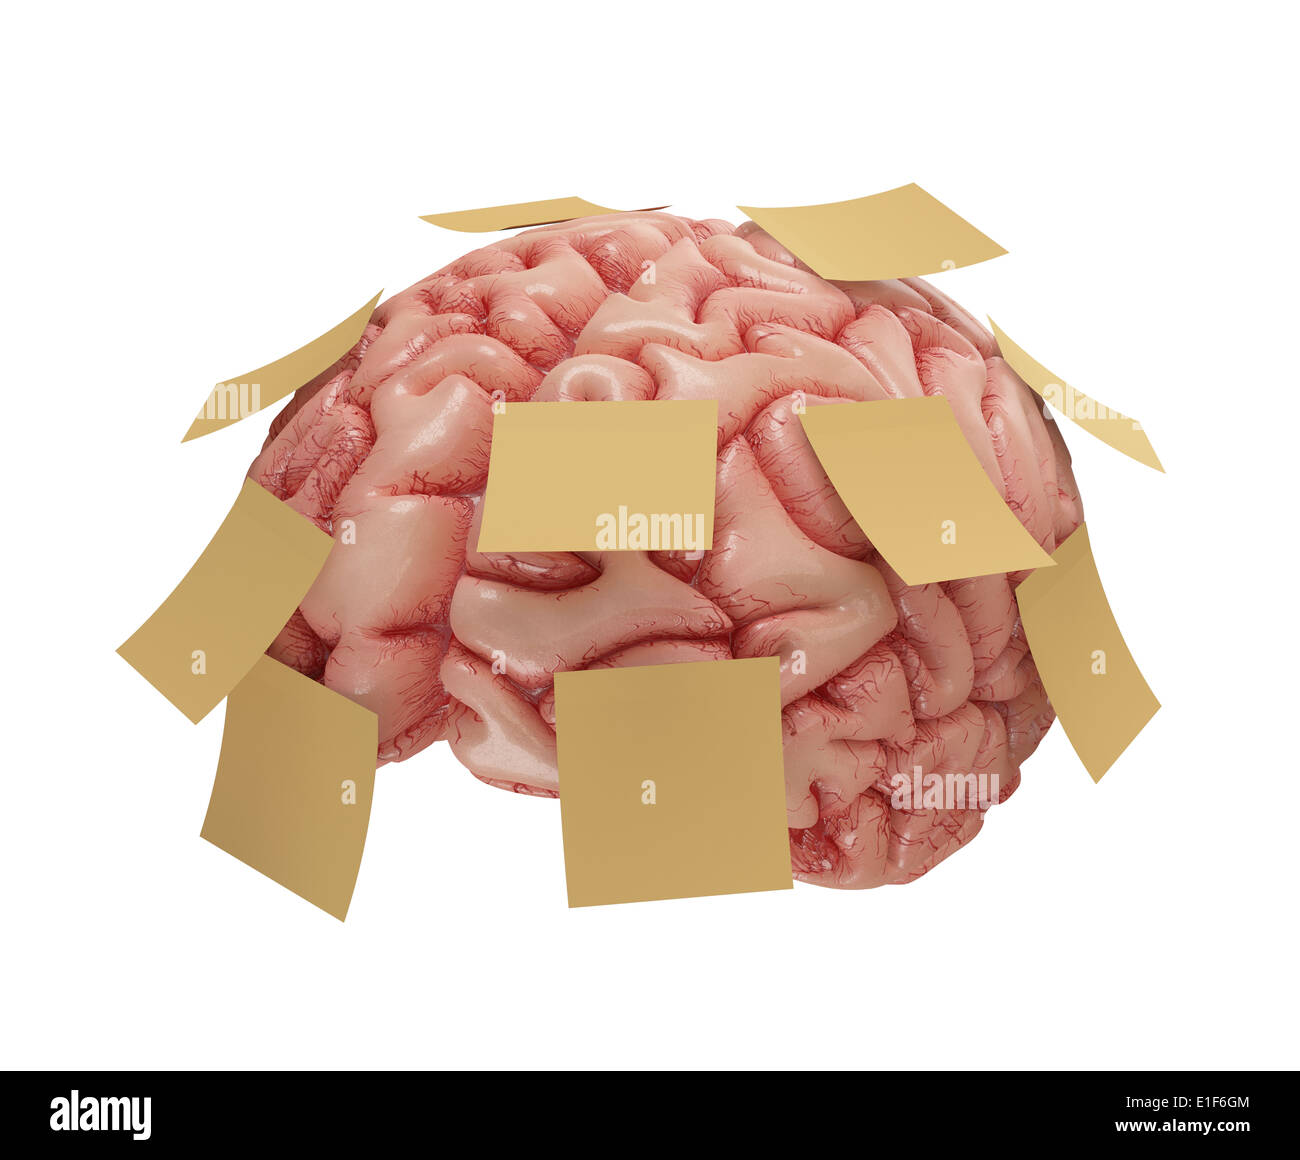 Menschlichen Gehirns mit gelben Haftnotizen beigefügt. Konzept der guten oder schlechten Gedächtnis. Clipping-Pfad enthalten. Stockfoto